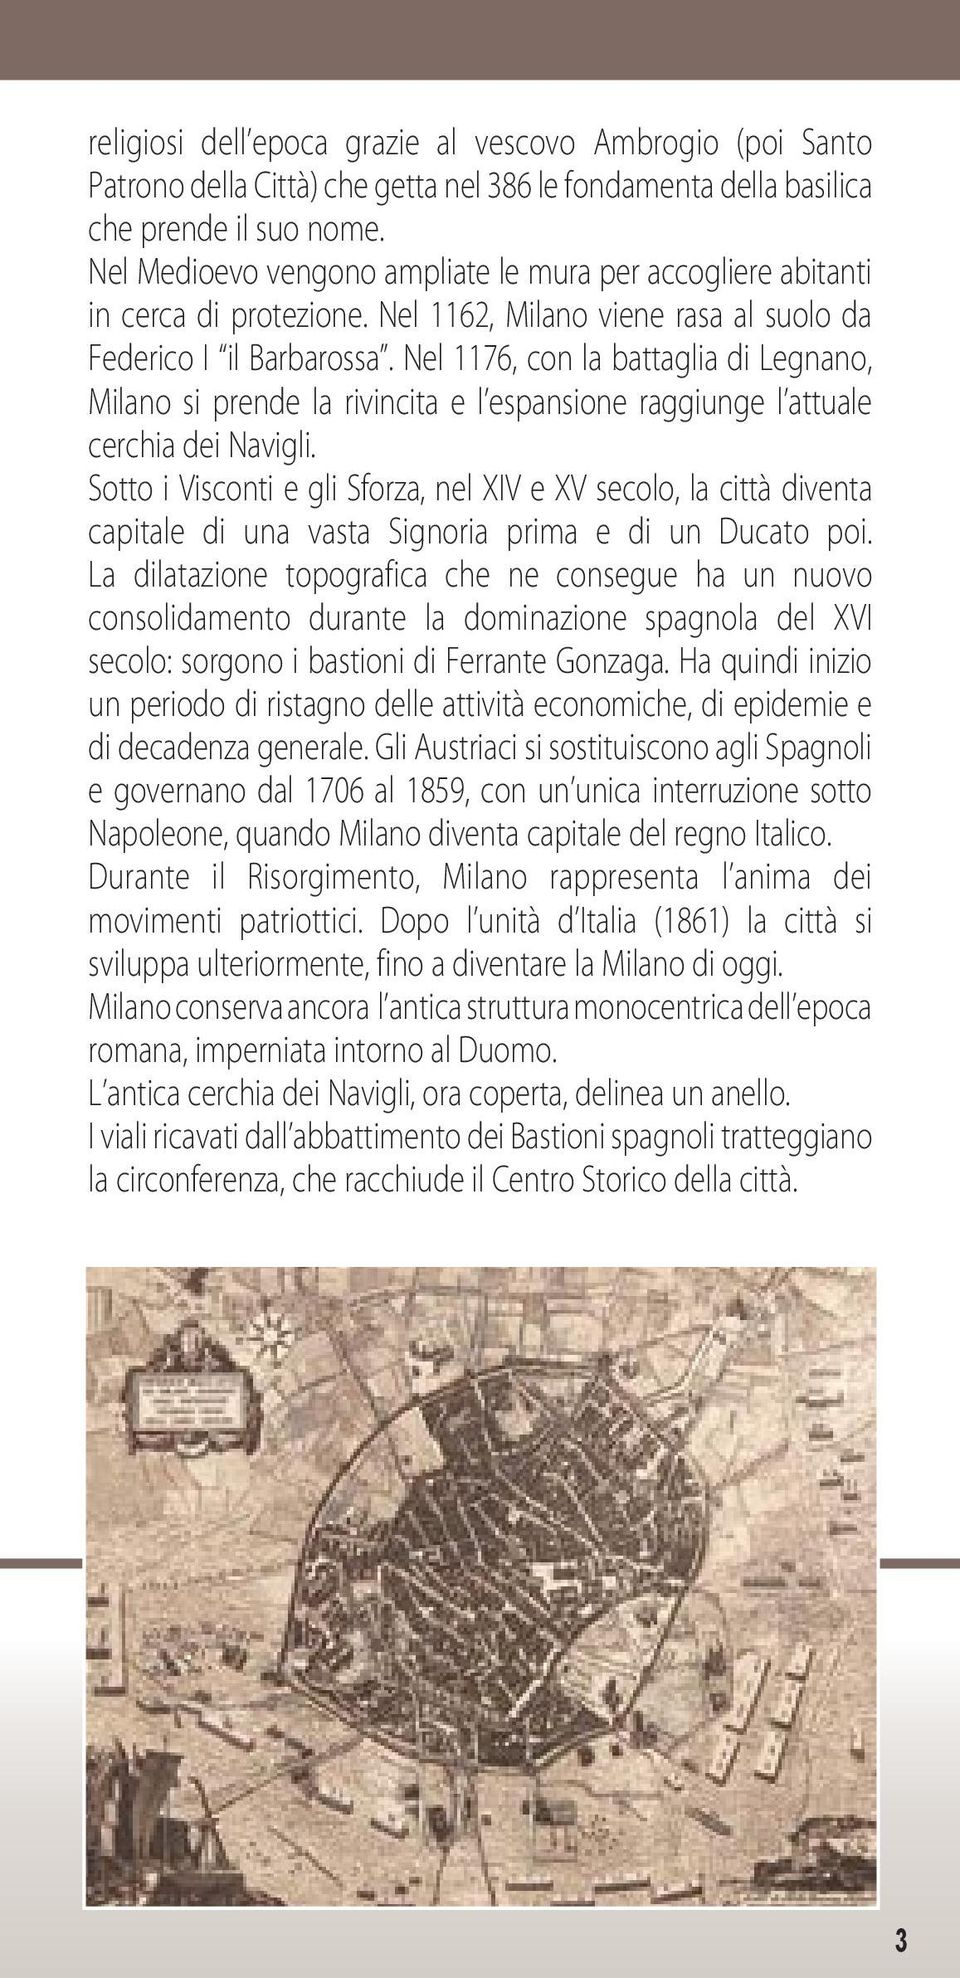 Nel 1176, con la battaglia di Legnano, Milano si prende la rivincita e l espansione raggiunge l attuale cerchia dei Navigli.